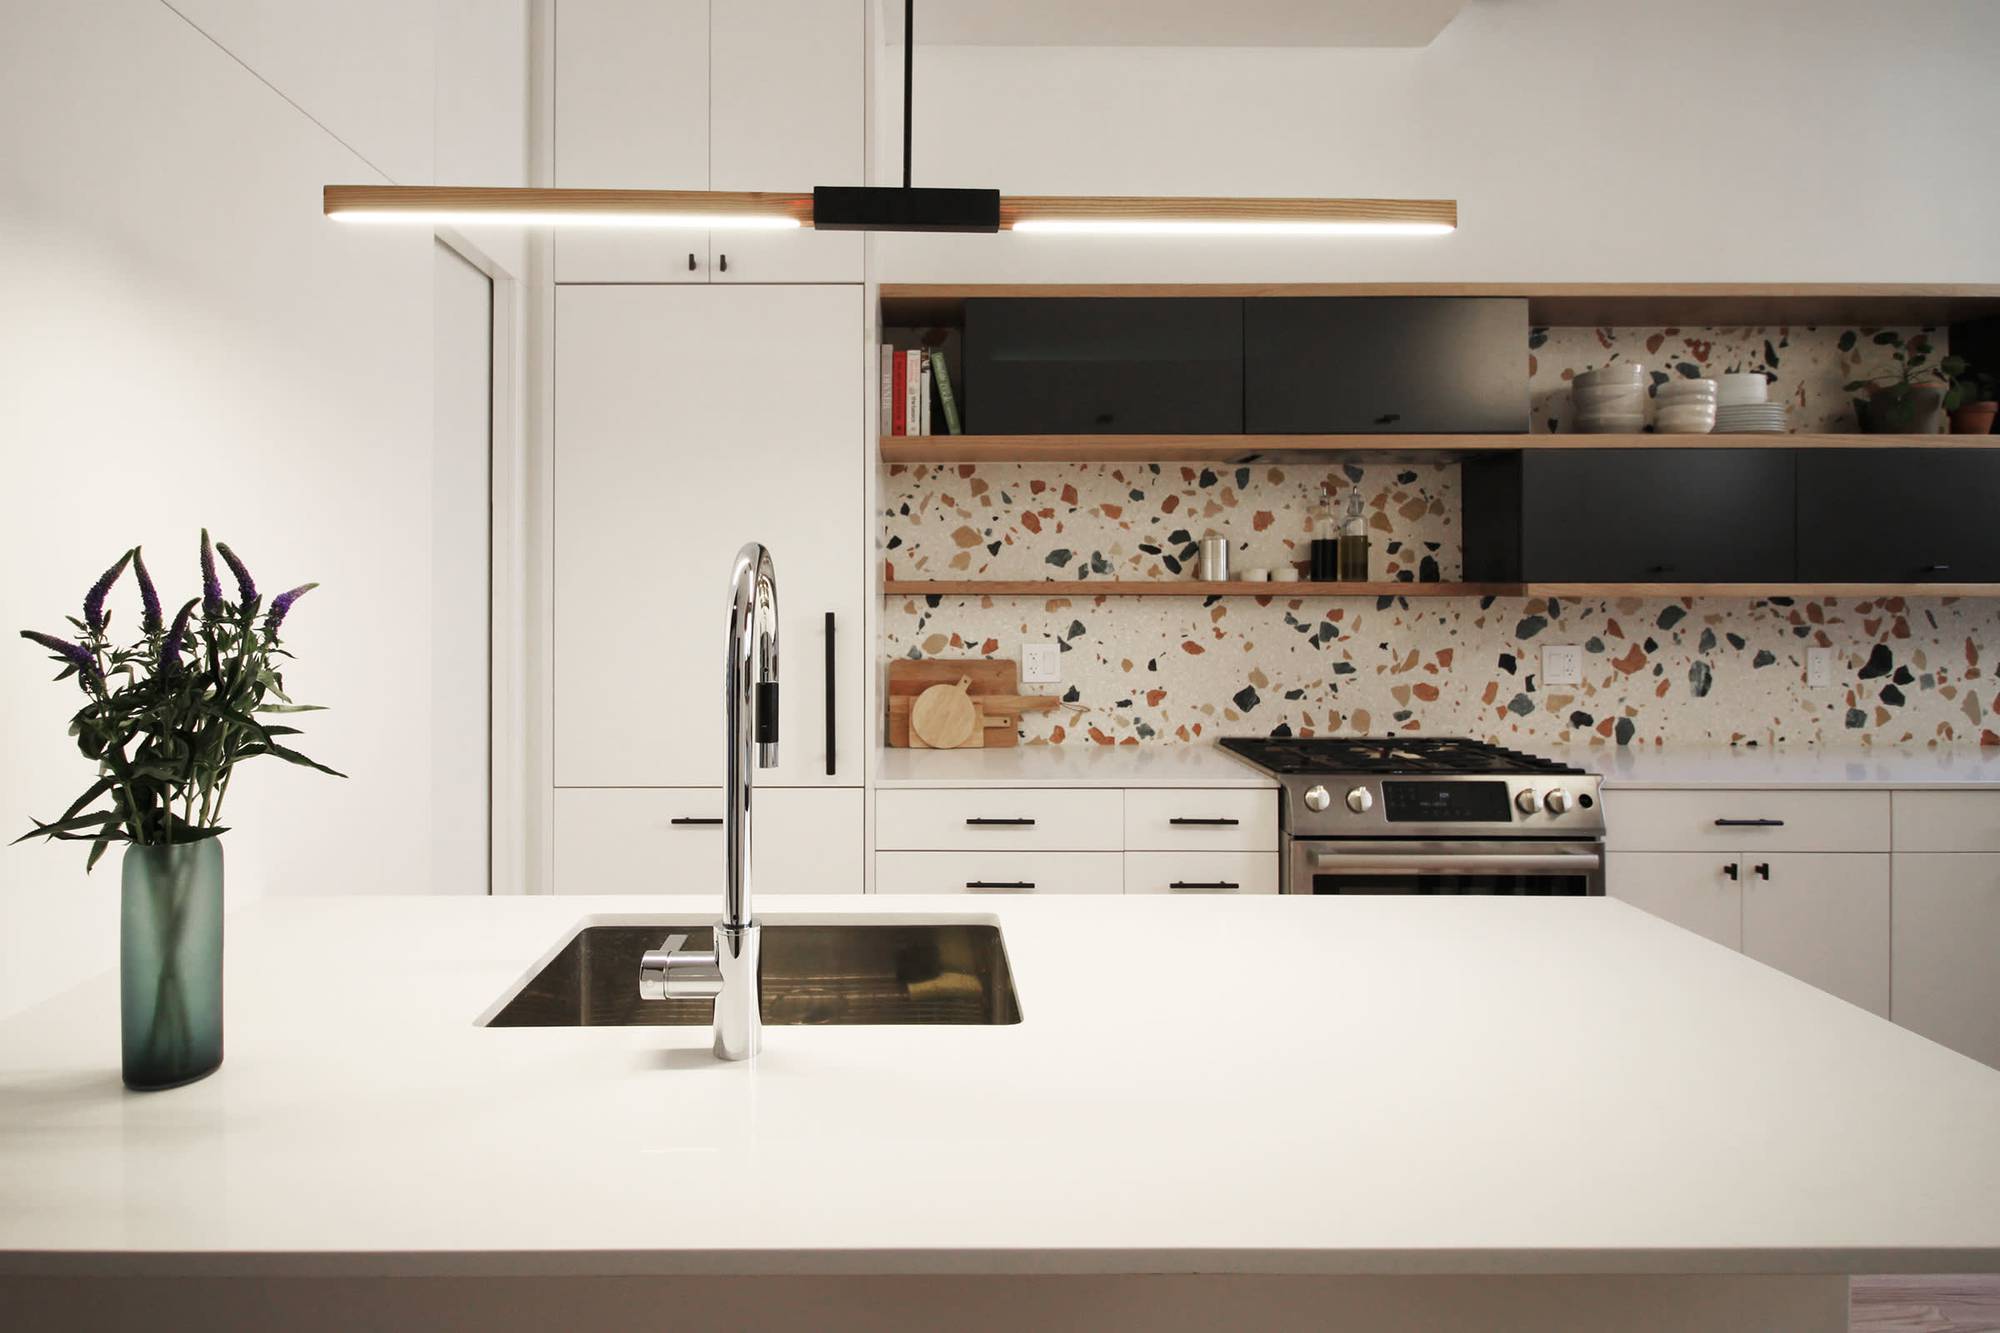 Trang trí nhà bếp bằng giấy dán tường dễ dàng, đơn giản và tiết kiệm rõ ràng so với dùng gạch ốp - Ảnh 1.